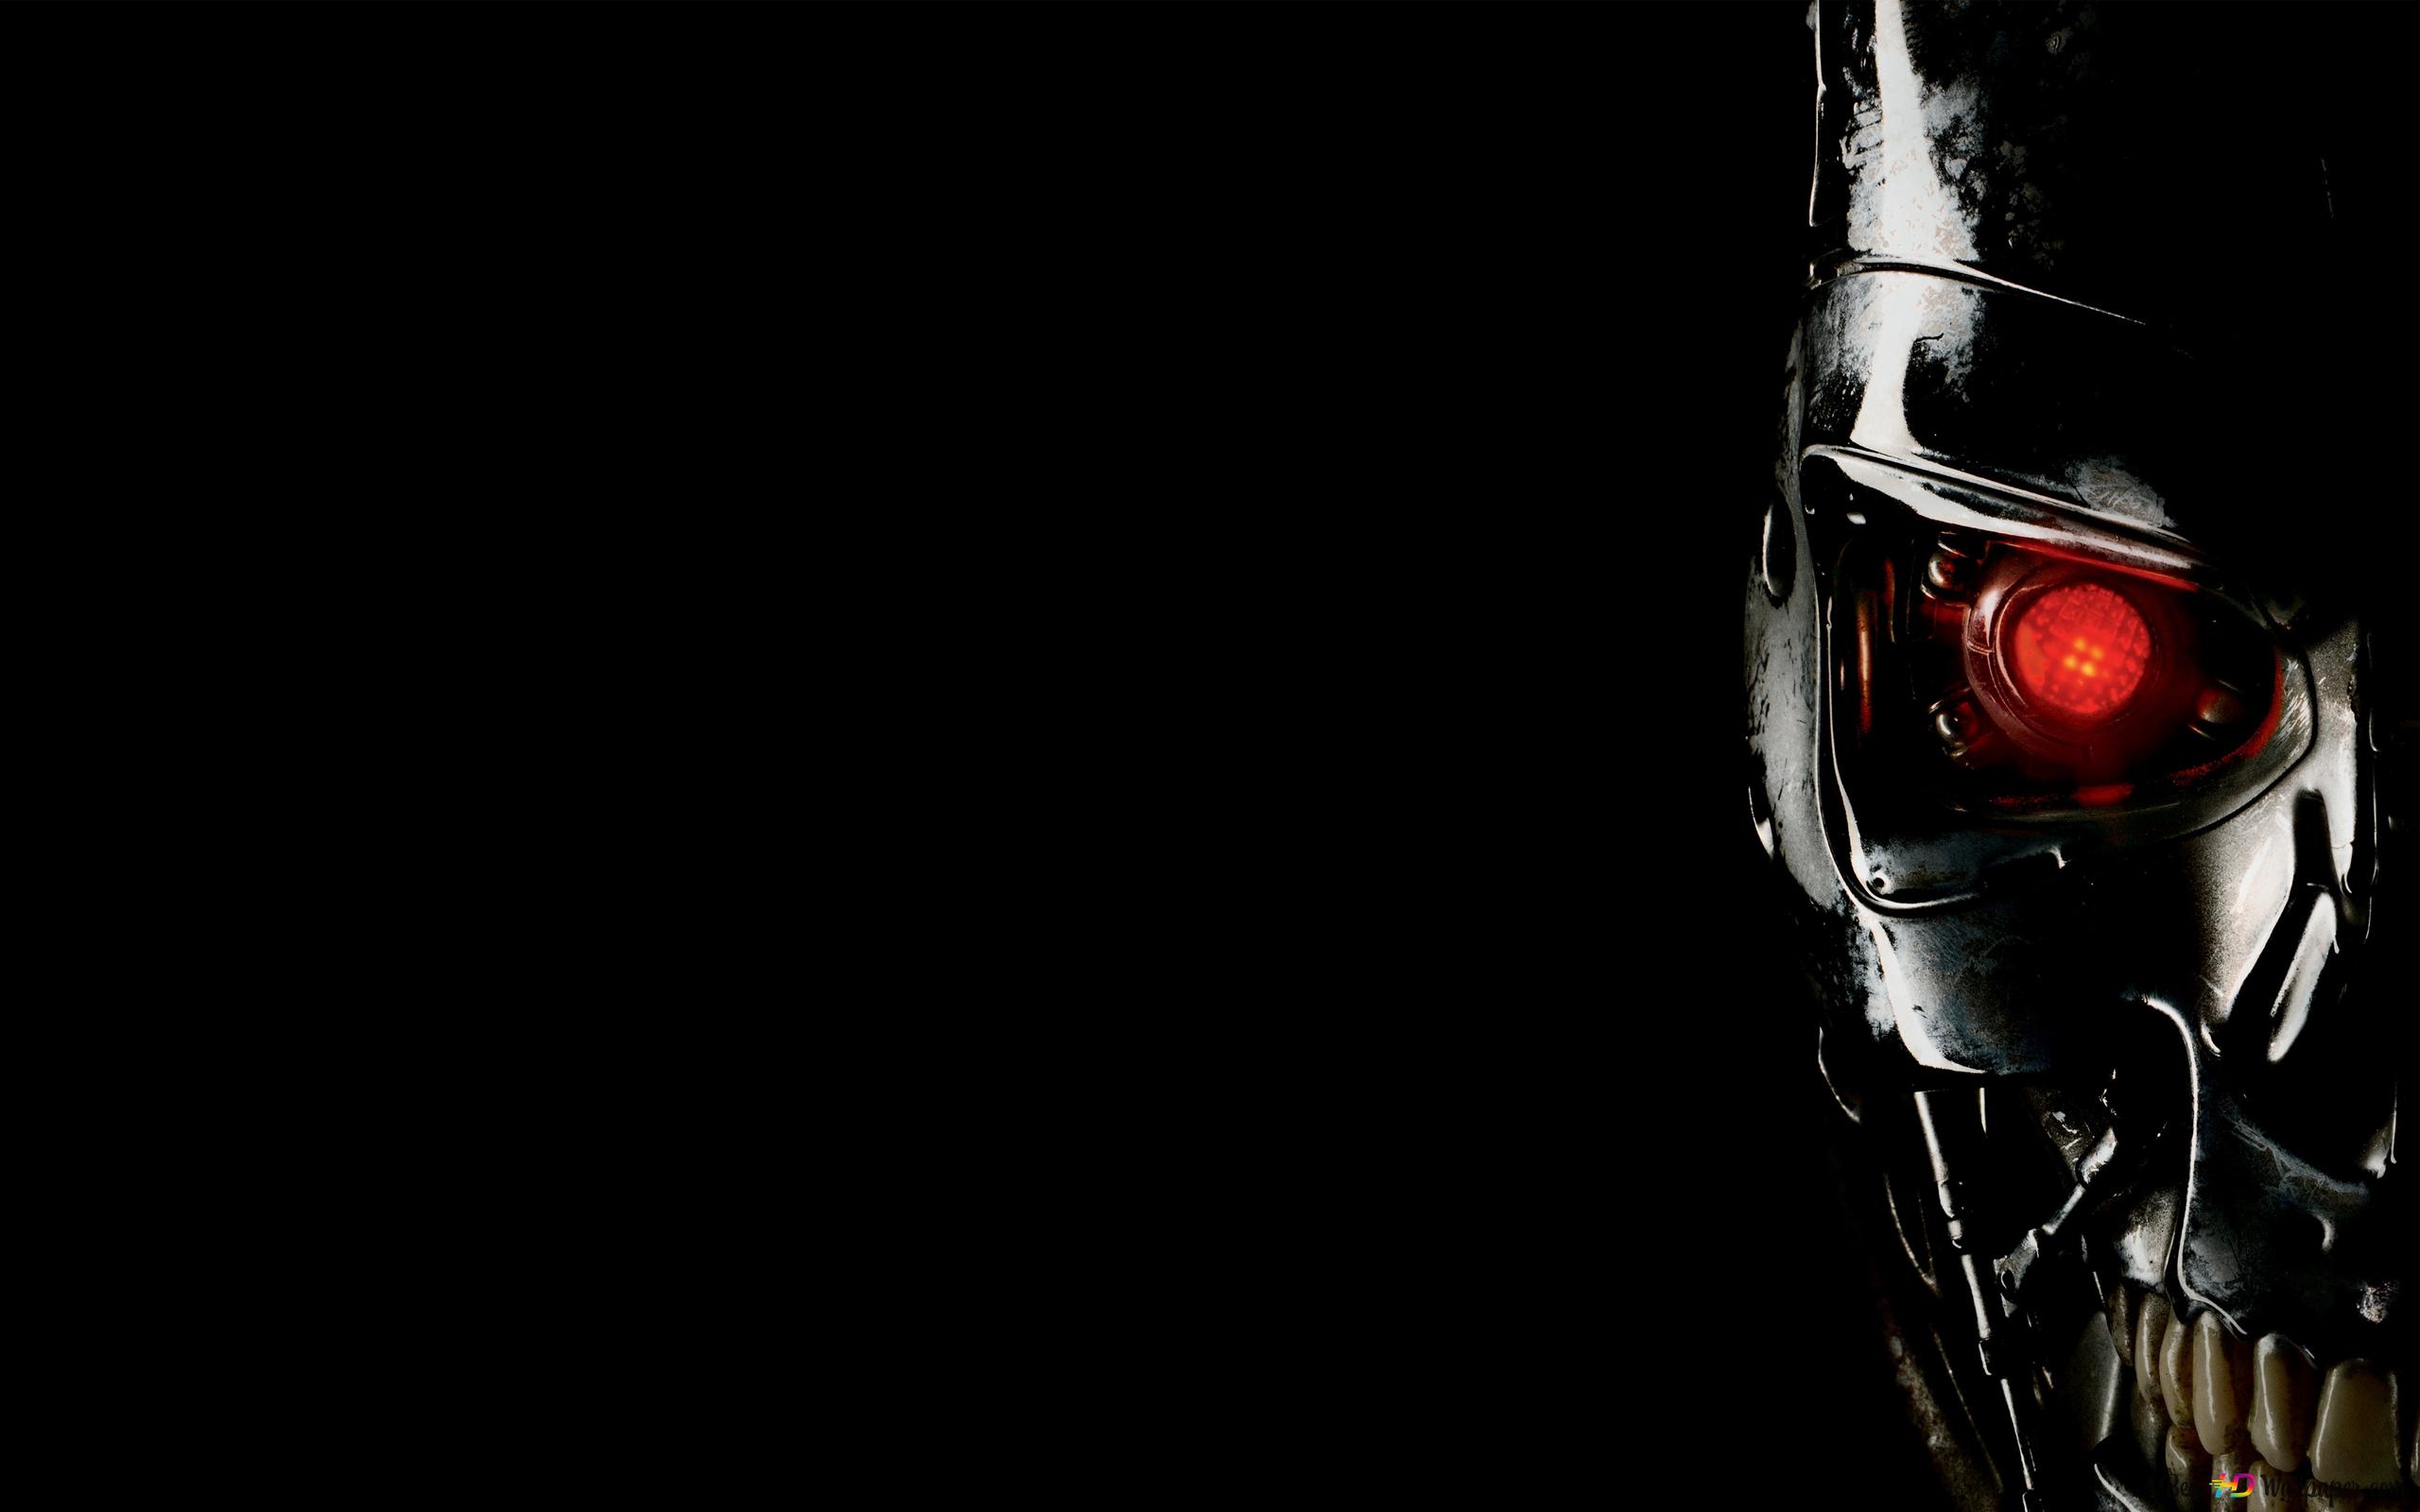 Terminator Genisys eyed robot 4K wallpaper download